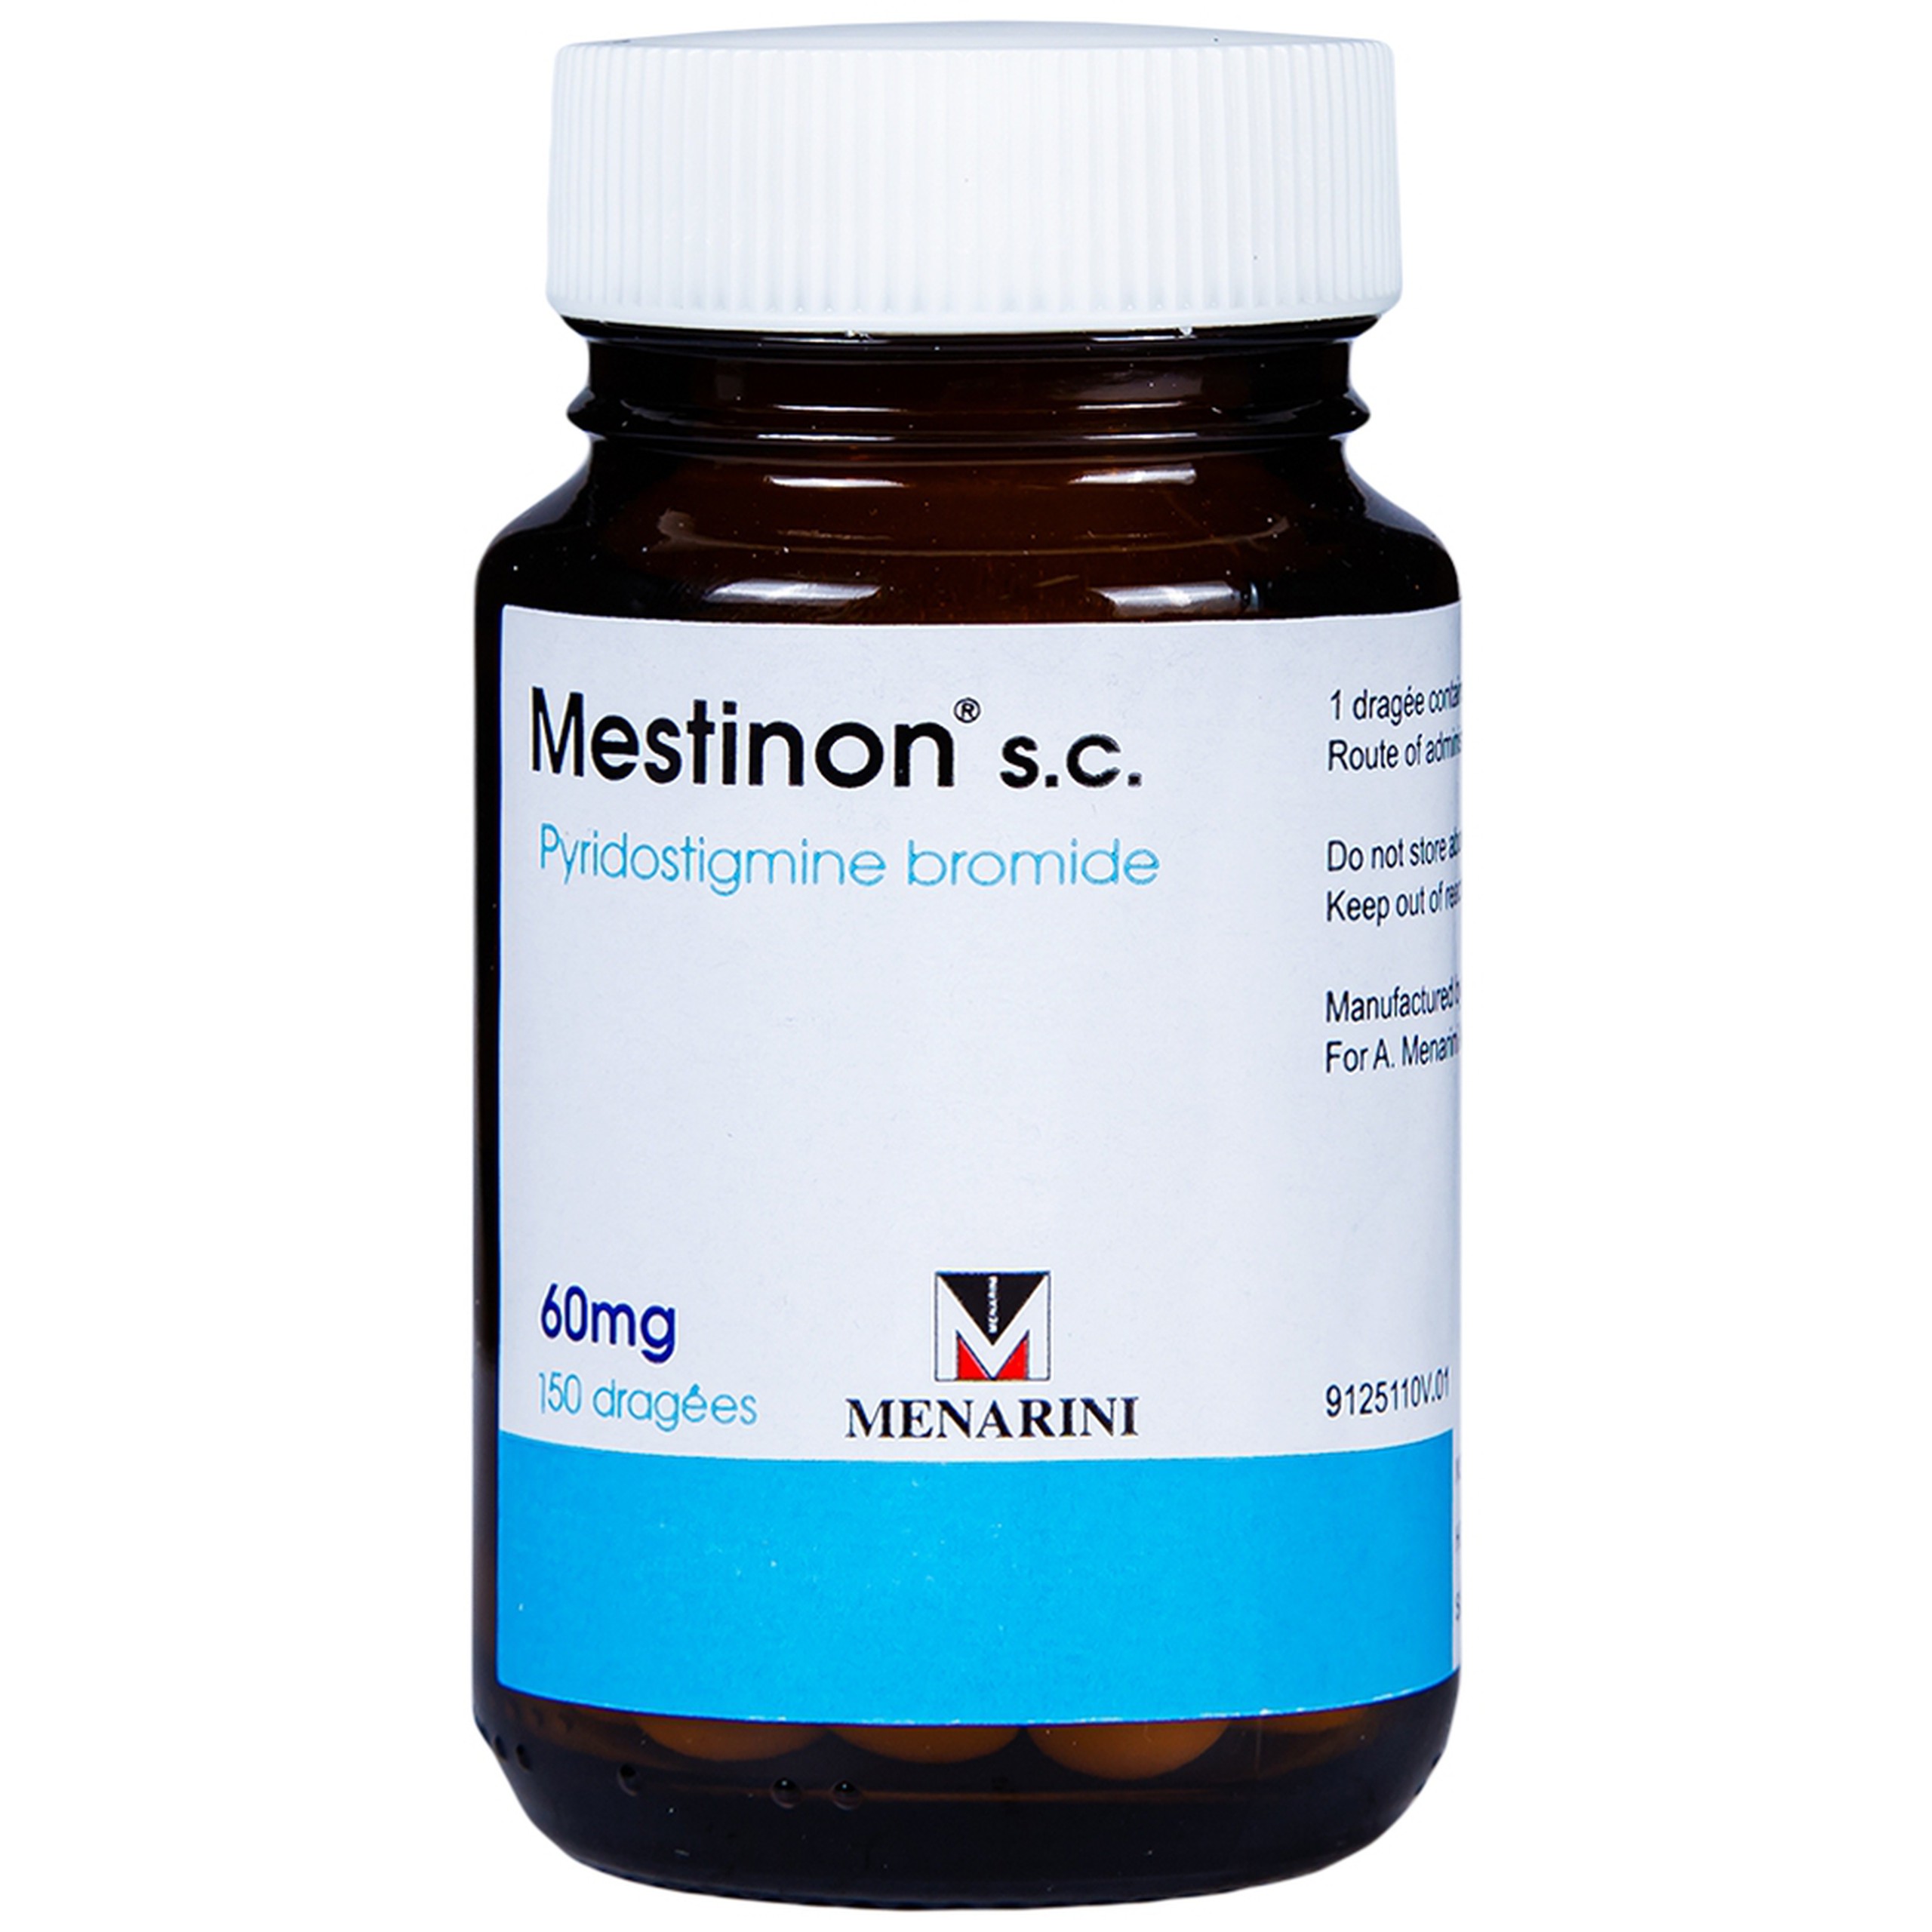 Viên nén Mestinon S.C. 60mg Menarini điều trị nhược cơ,  tắc ruột do liệt ruột và bí tiểu sau phẫu thuật (150 viên)